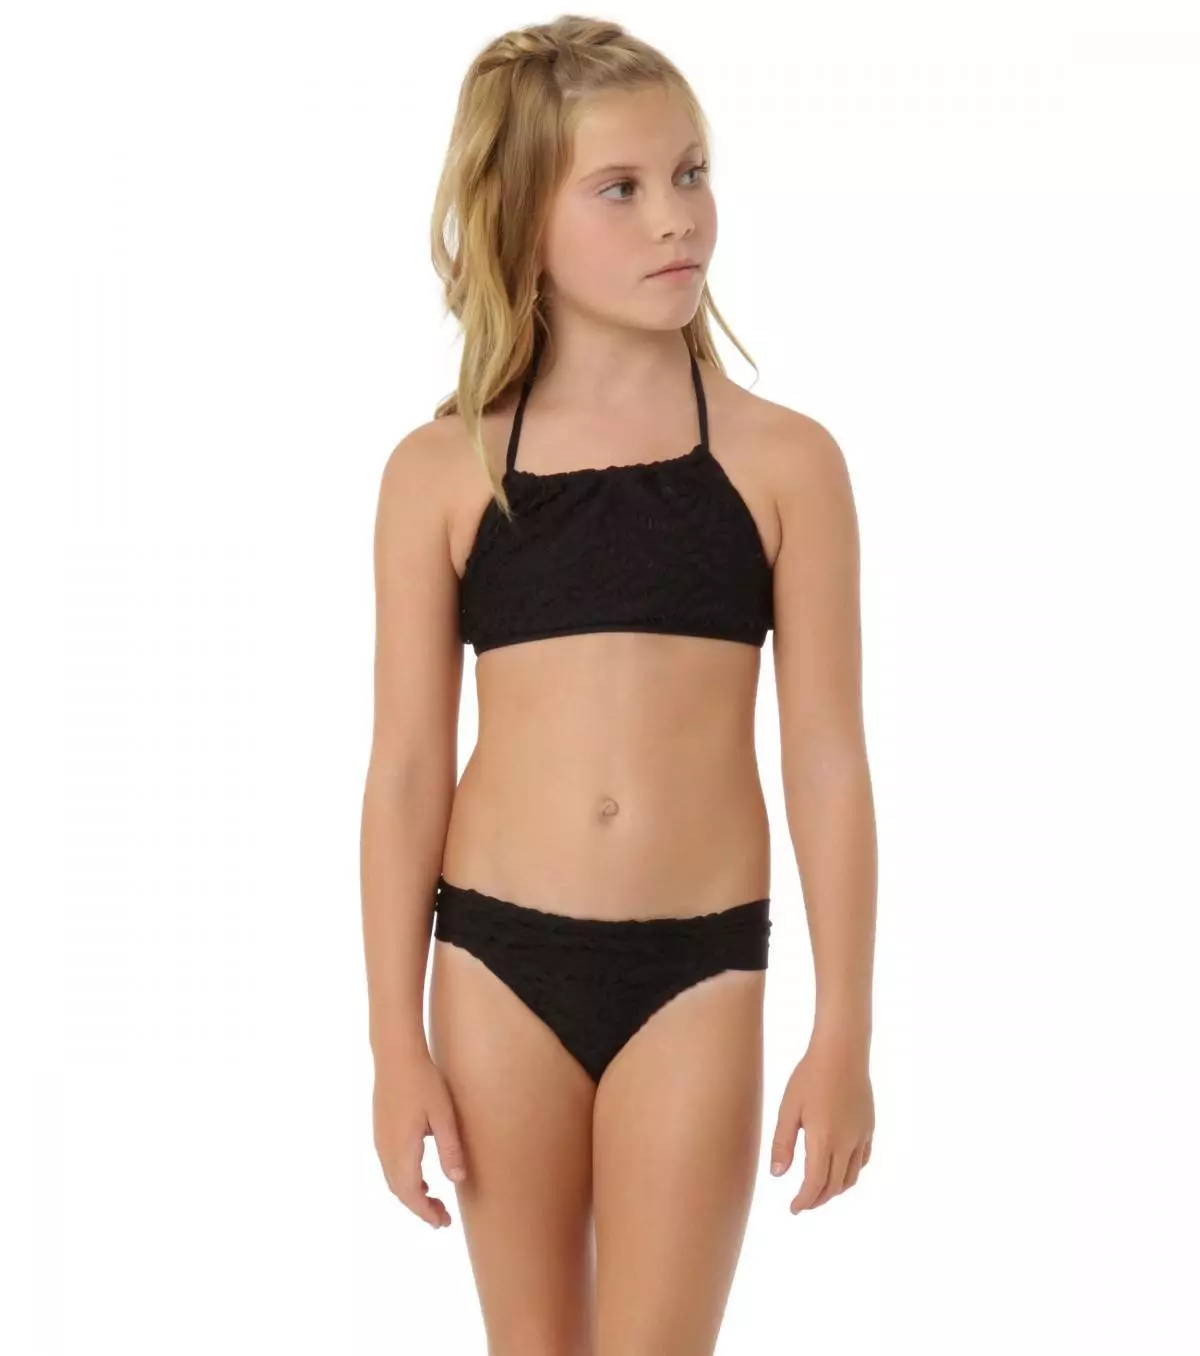 Աղջիկների համար լողավազանի մանկական լողազգեստ (77 լուսանկար). Լողի մոդել, լողափի համար երեխաների փակ լողազգեստ 13583_49